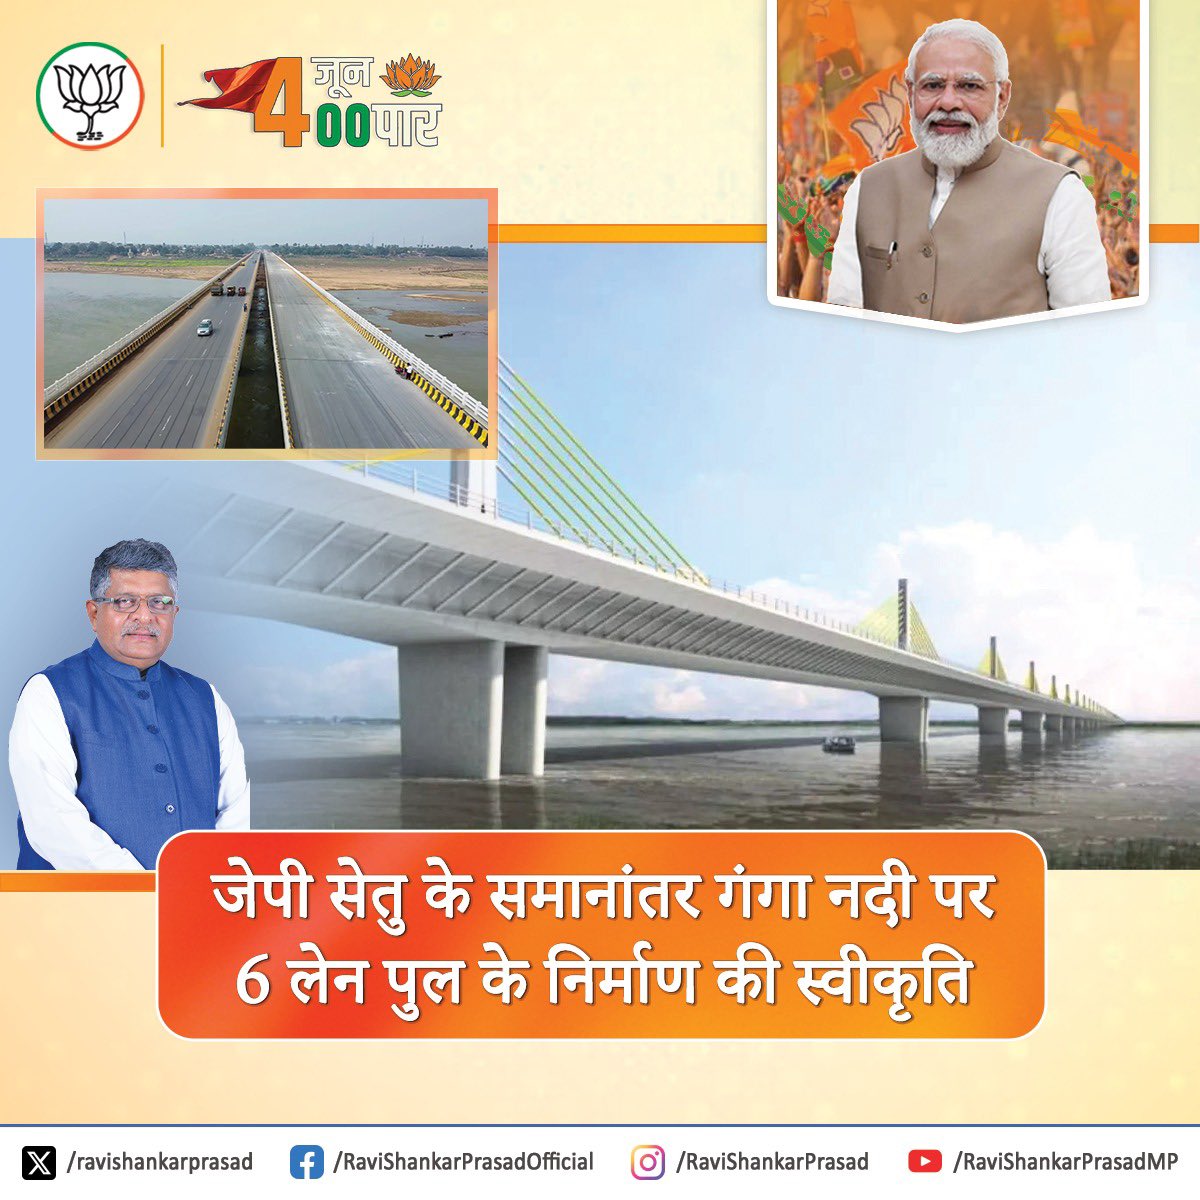 मोदी है तो मुमकिन है! जेपी सेतु के समानांतर गंगा नदी पर 6 लेन पुल के निर्माण की स्वीकृति प्रदान।